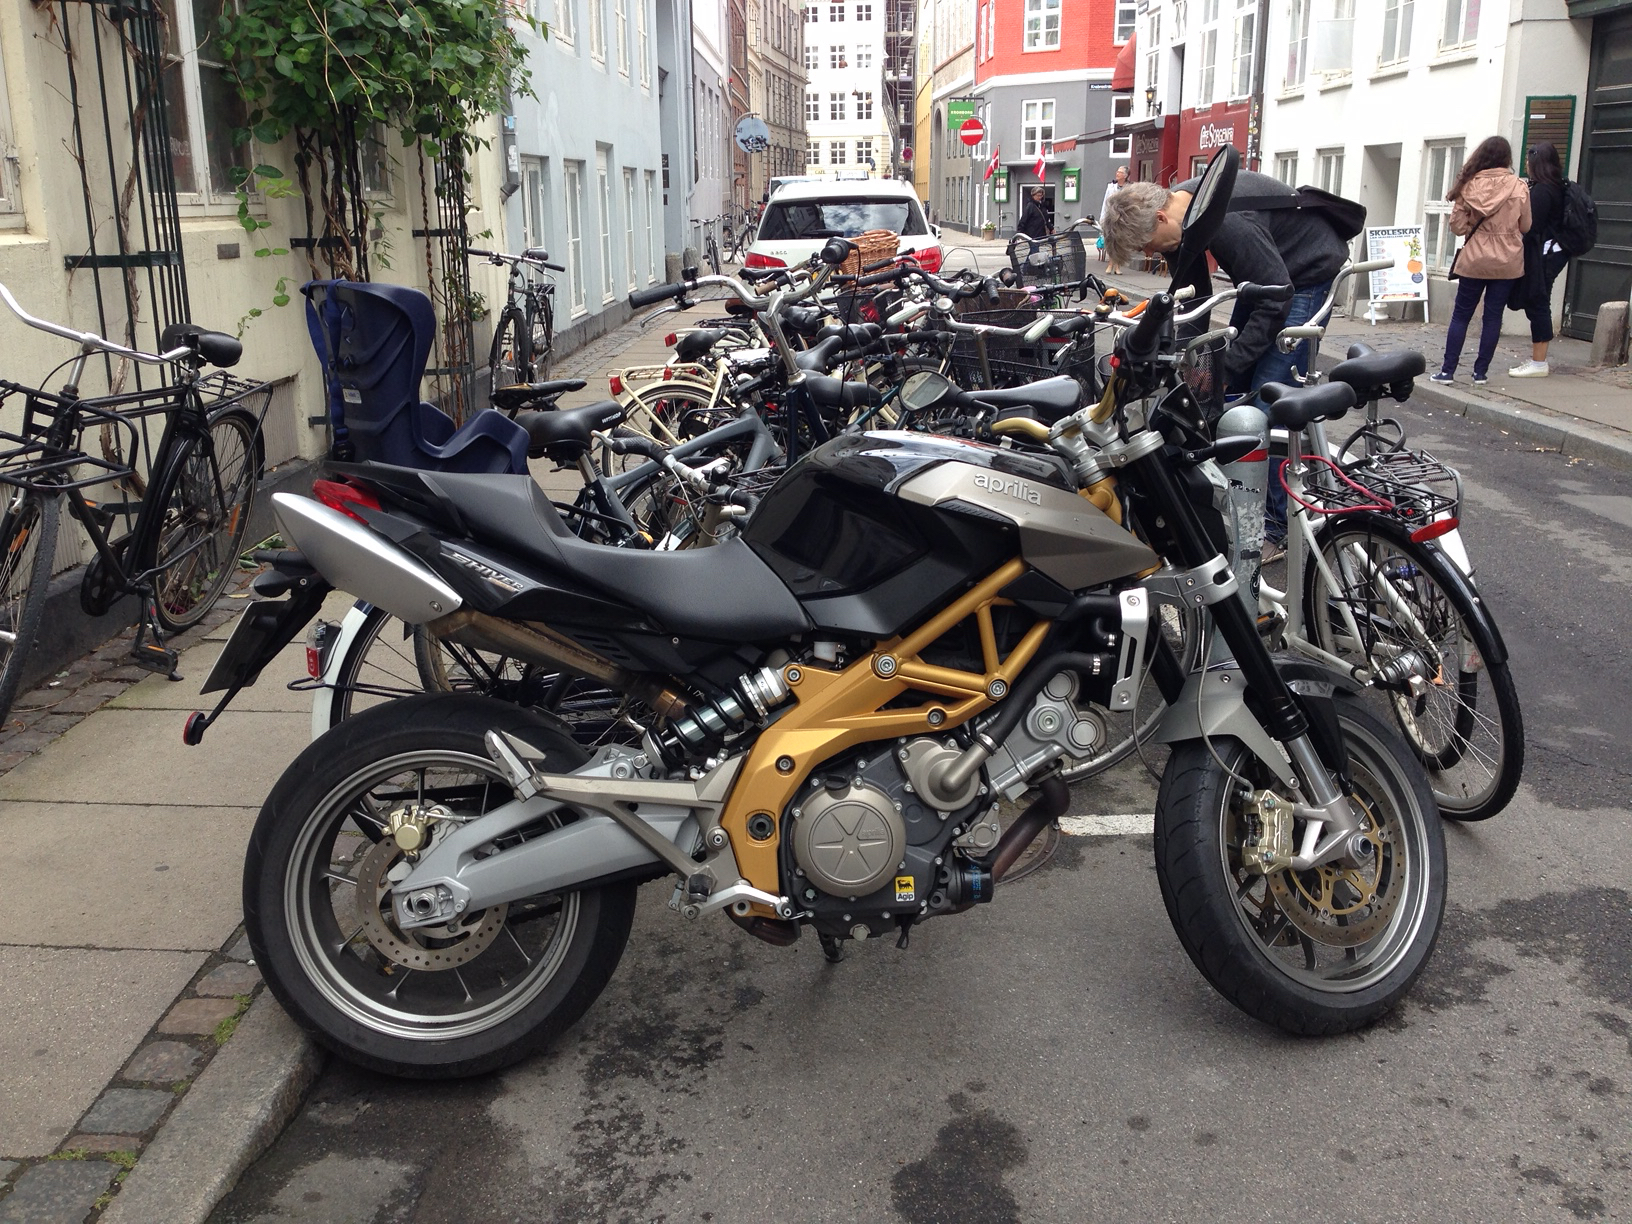 Folkeskole Fordøjelsesorgan Modernisere Nye regler for motorcykelparkering i Aarhus – Bike powered by Motorrad